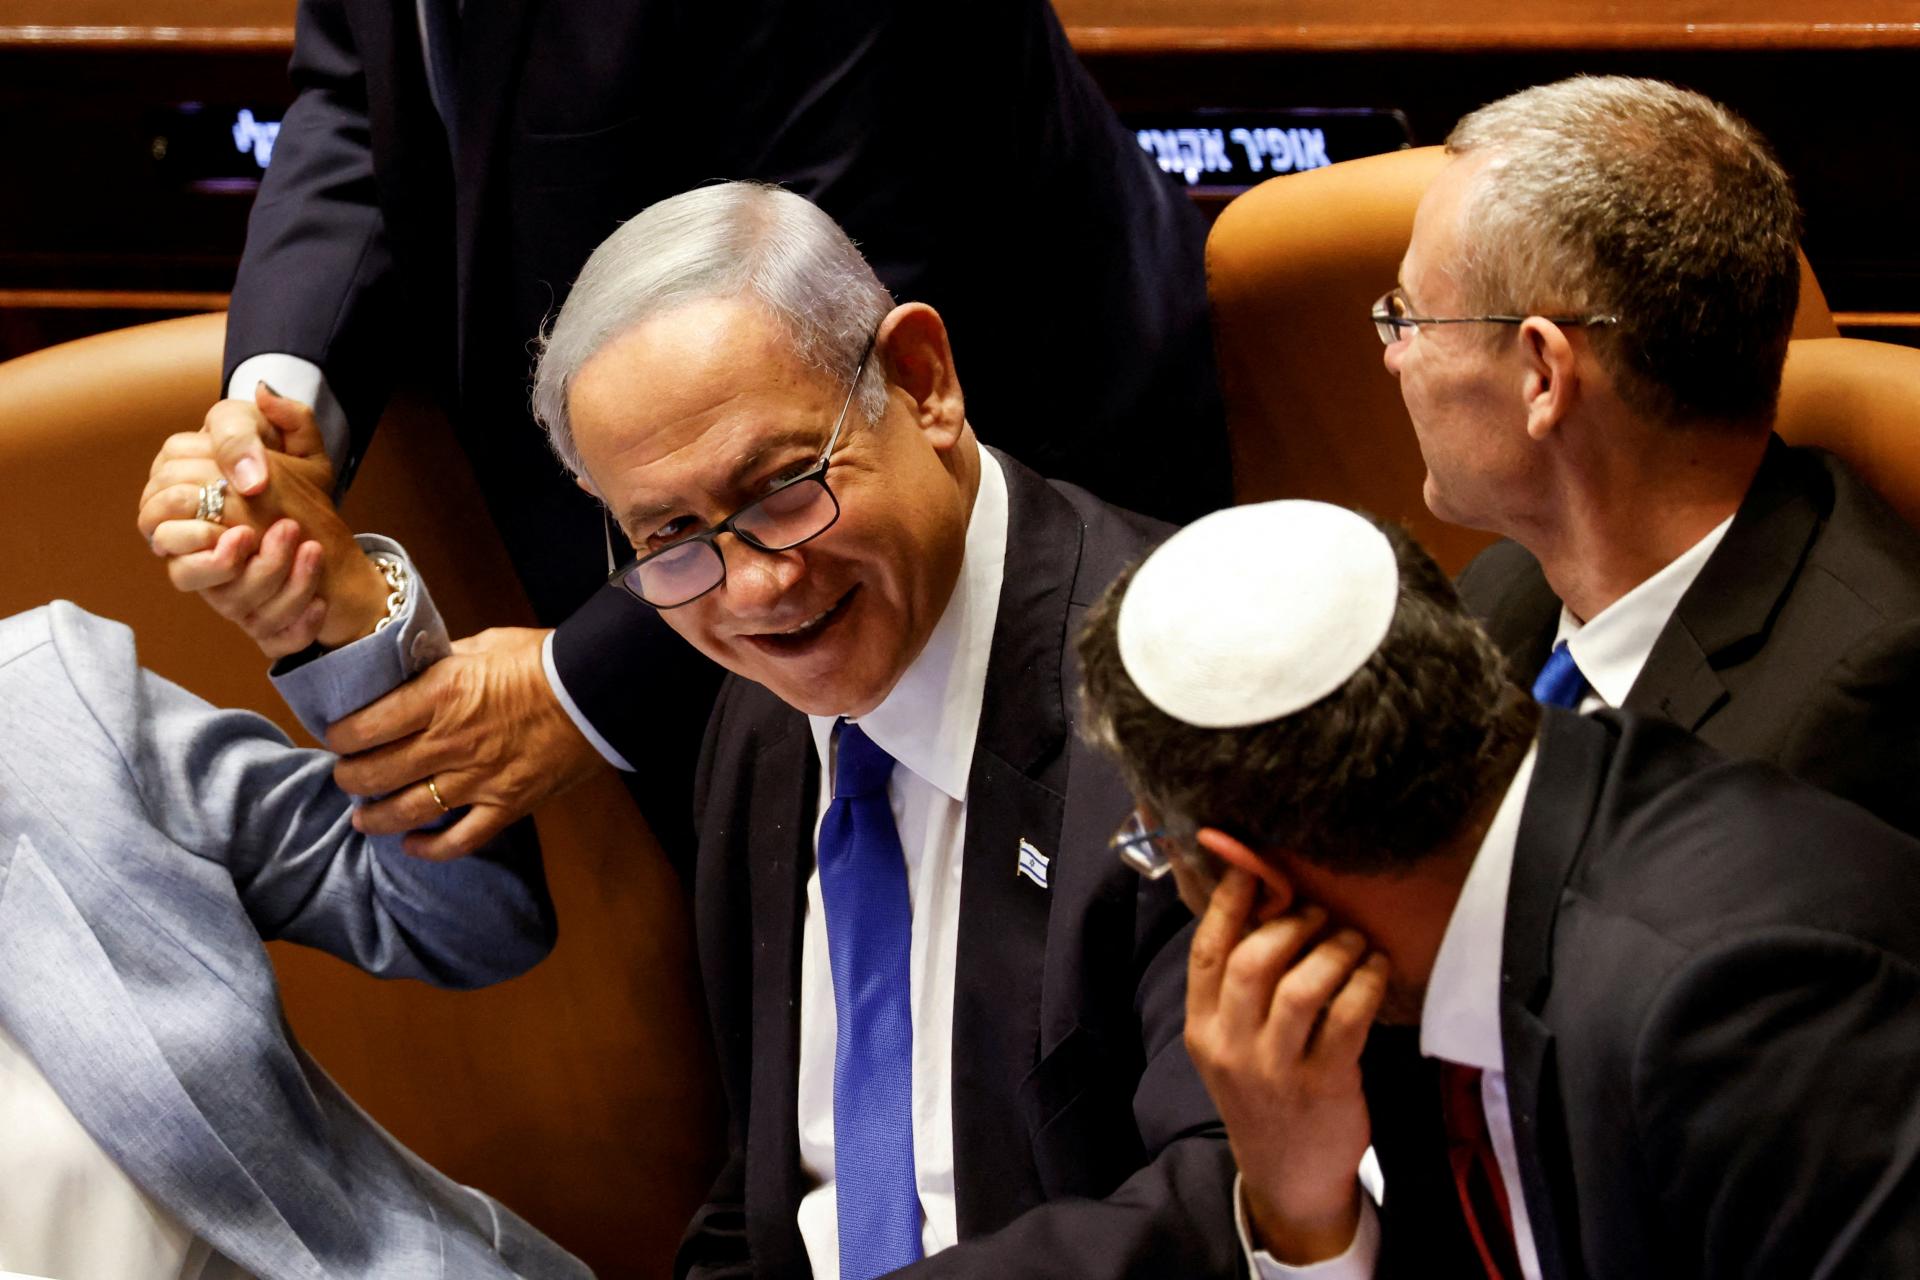 Dodatok obmedzujúci právomoci Najvyššieho súdu bol nevyhnutný, tvrdí Netanjahu